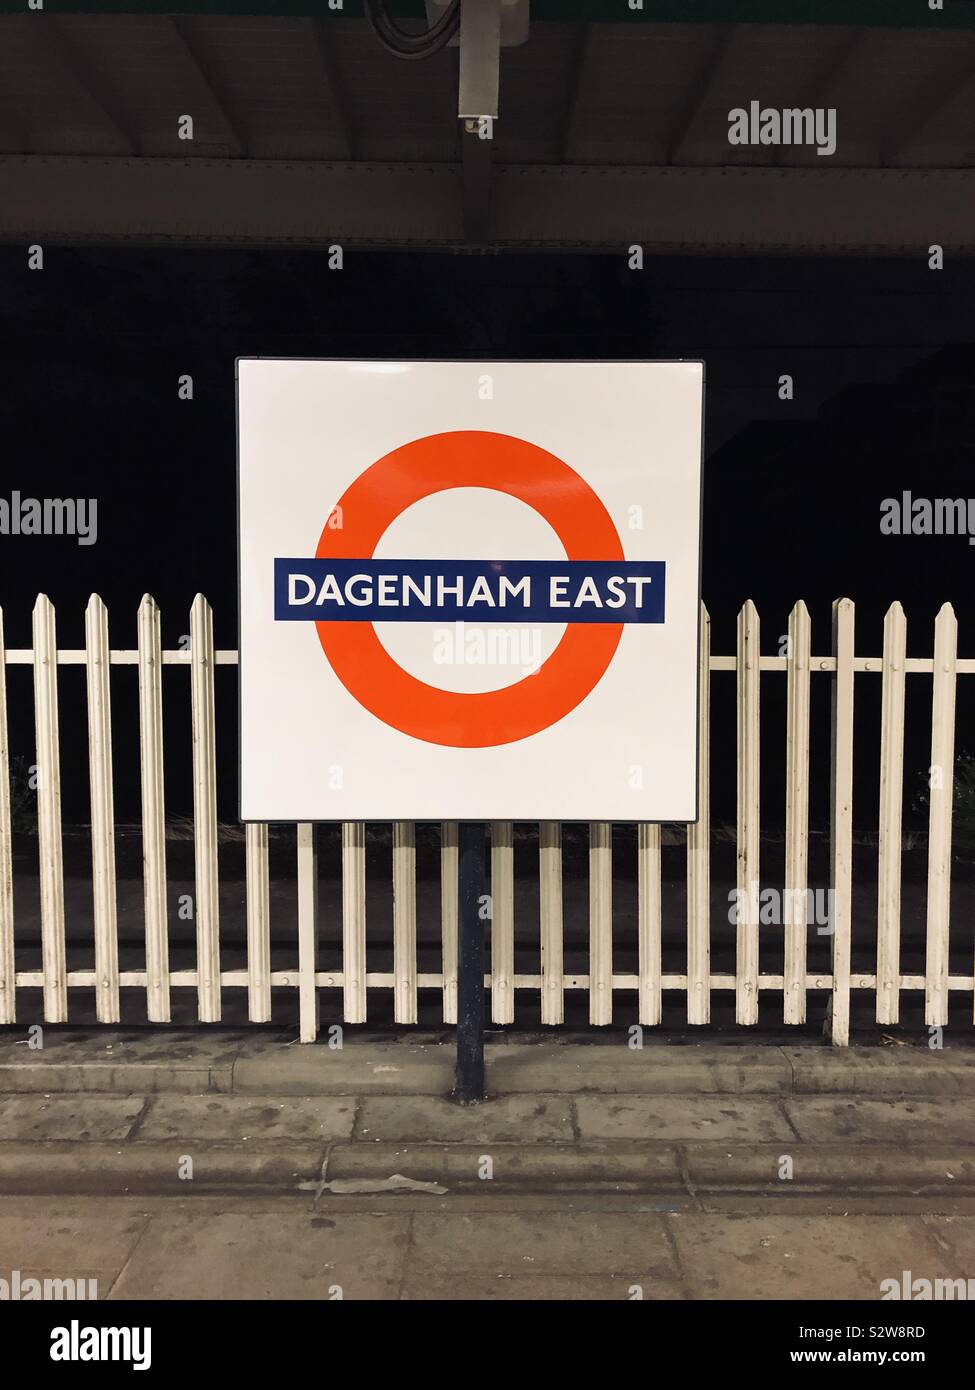 Dagenham East tube station Stock Photo